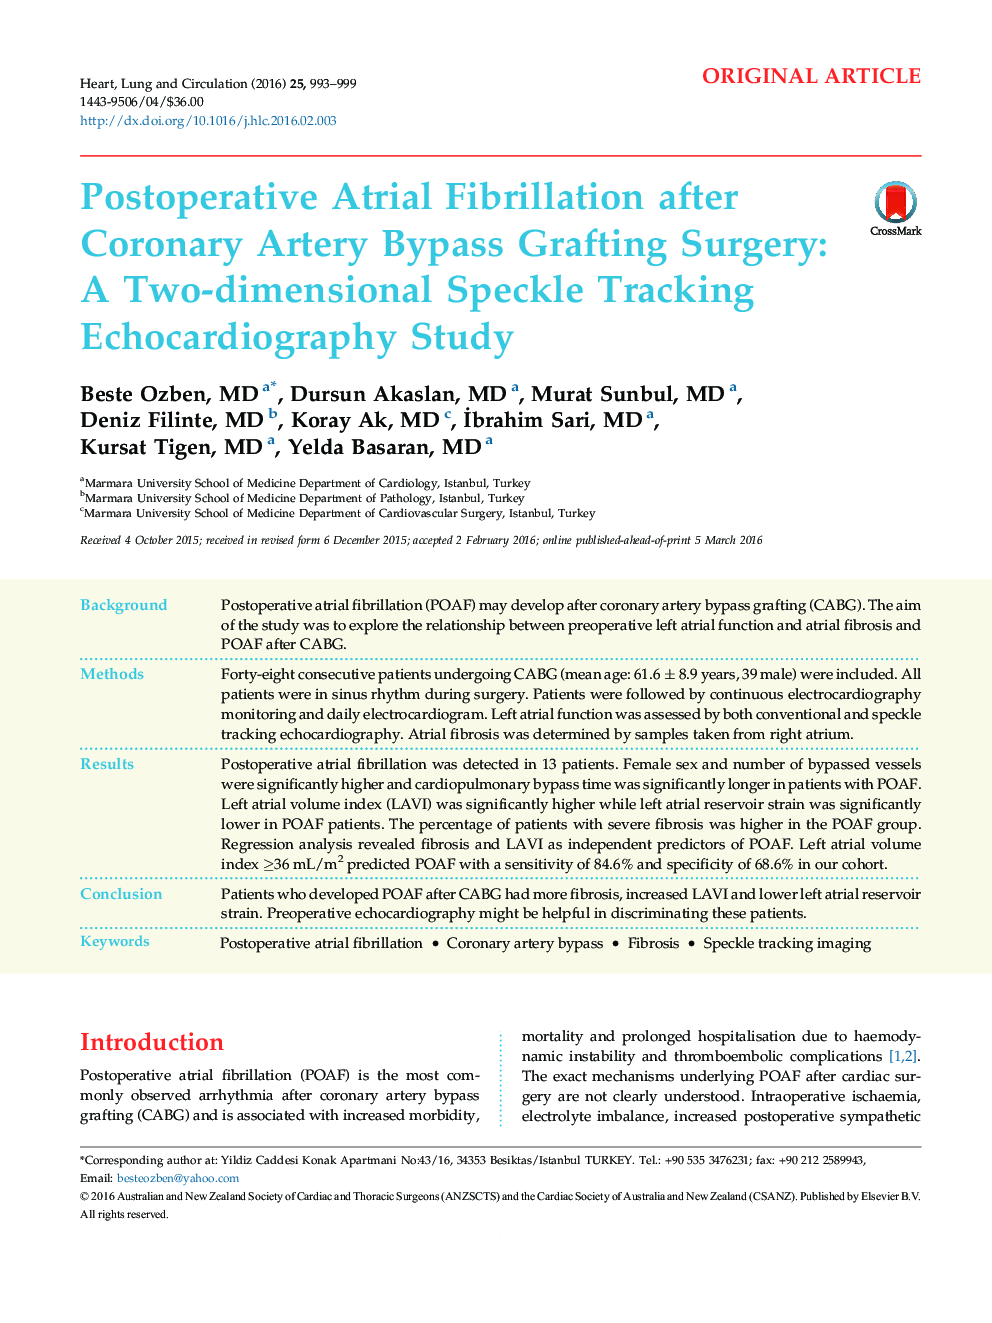 فیبریلاسیون دهلیزی پس از عمل پس از عمل جراحی پیوند عروق کرونر: یک مطالعه ی اکوکاردیوگرافی ردیابی دوقطبی 